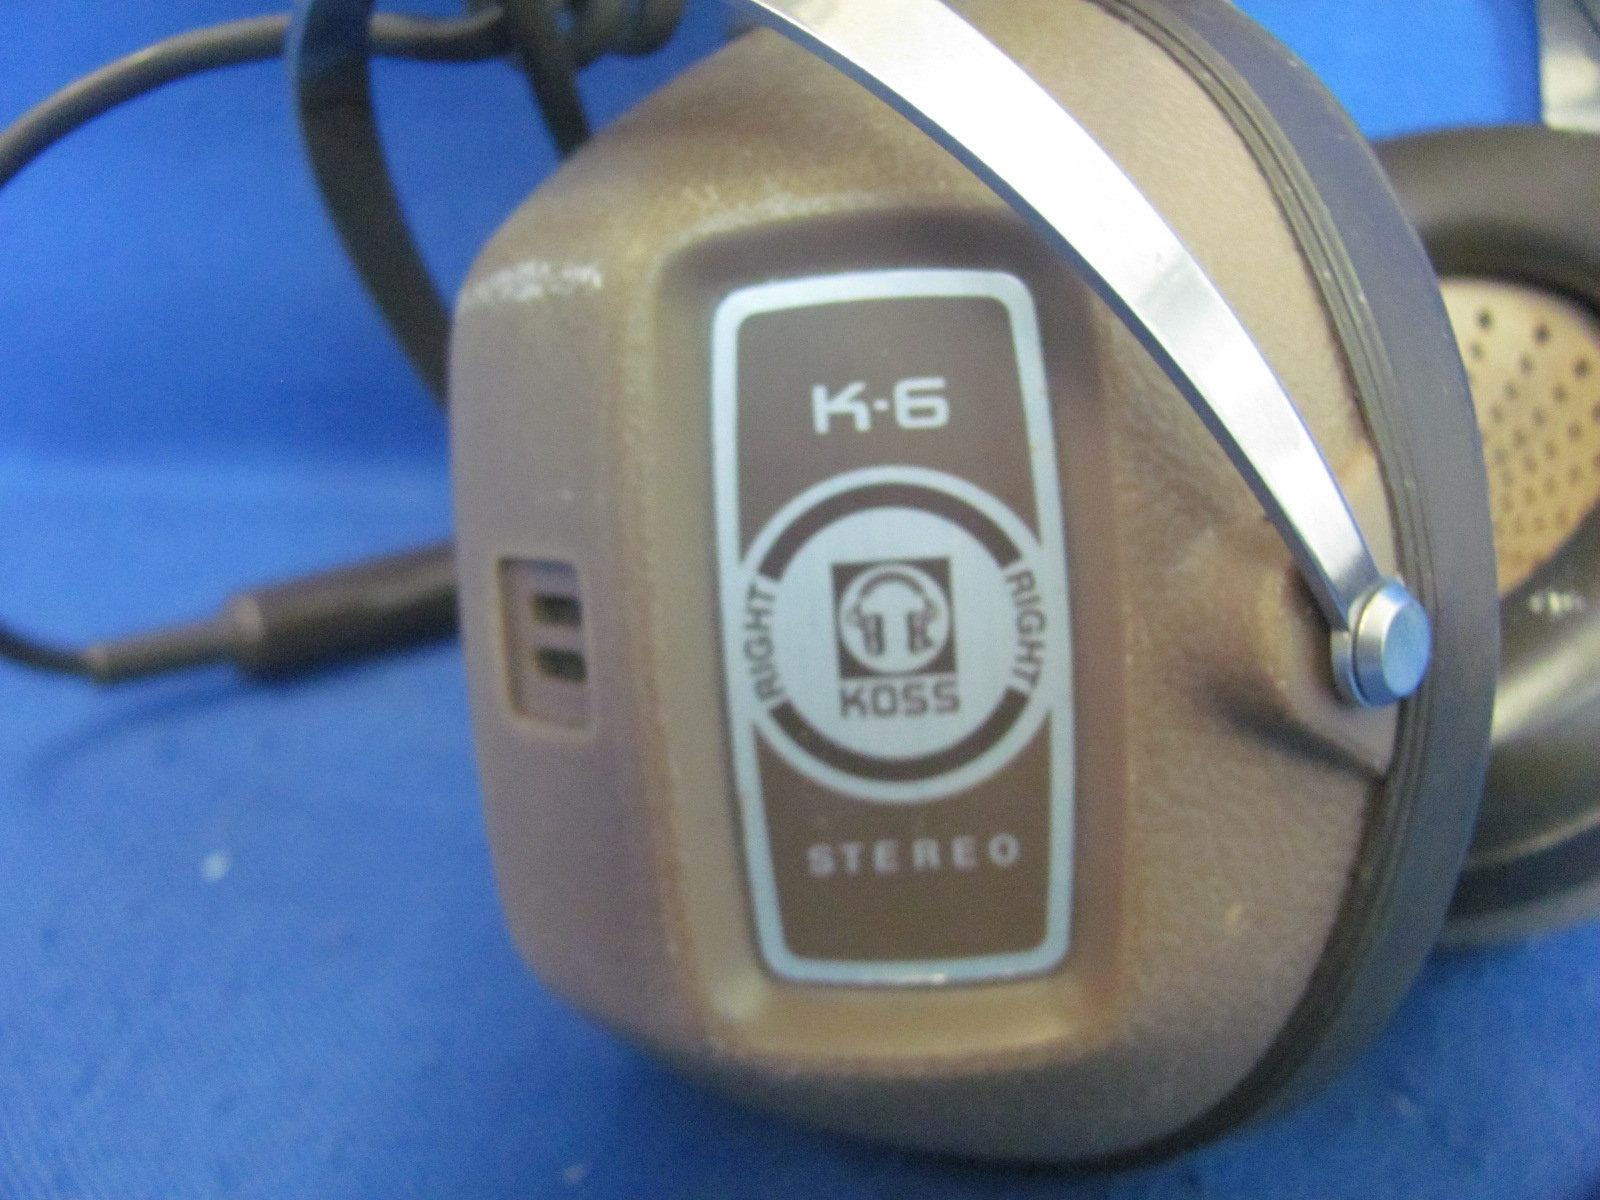 Radio Shack Koss K-6 Stereo Headphones – Not Tested – Light Wear